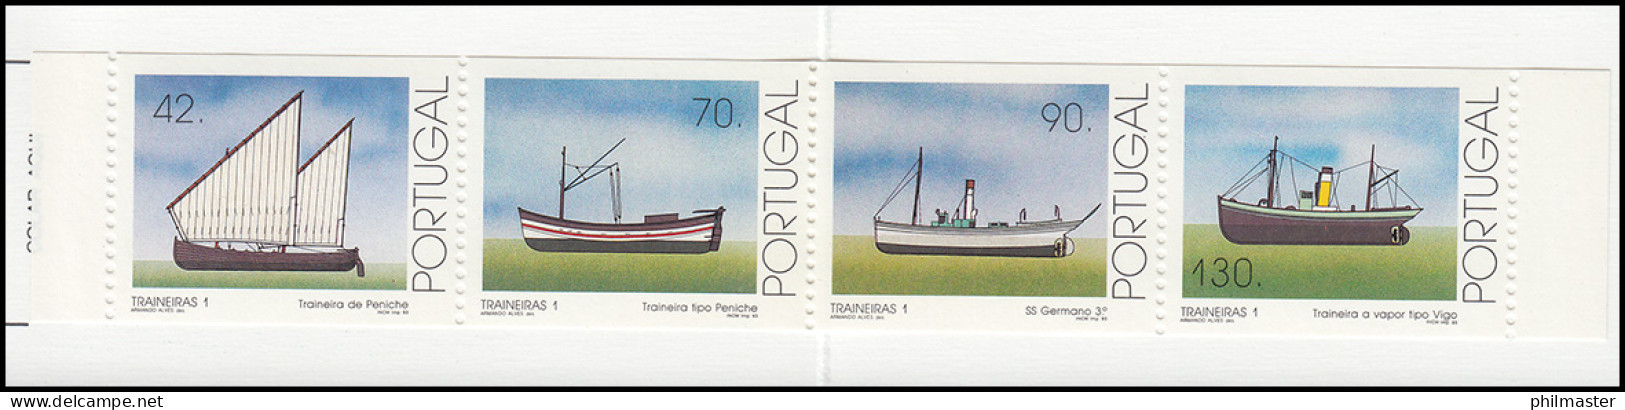 Portugal-Markenheftchen 10 Küstenfischerei Schleppnetzschiffe 1993, Postfrisch - Booklets